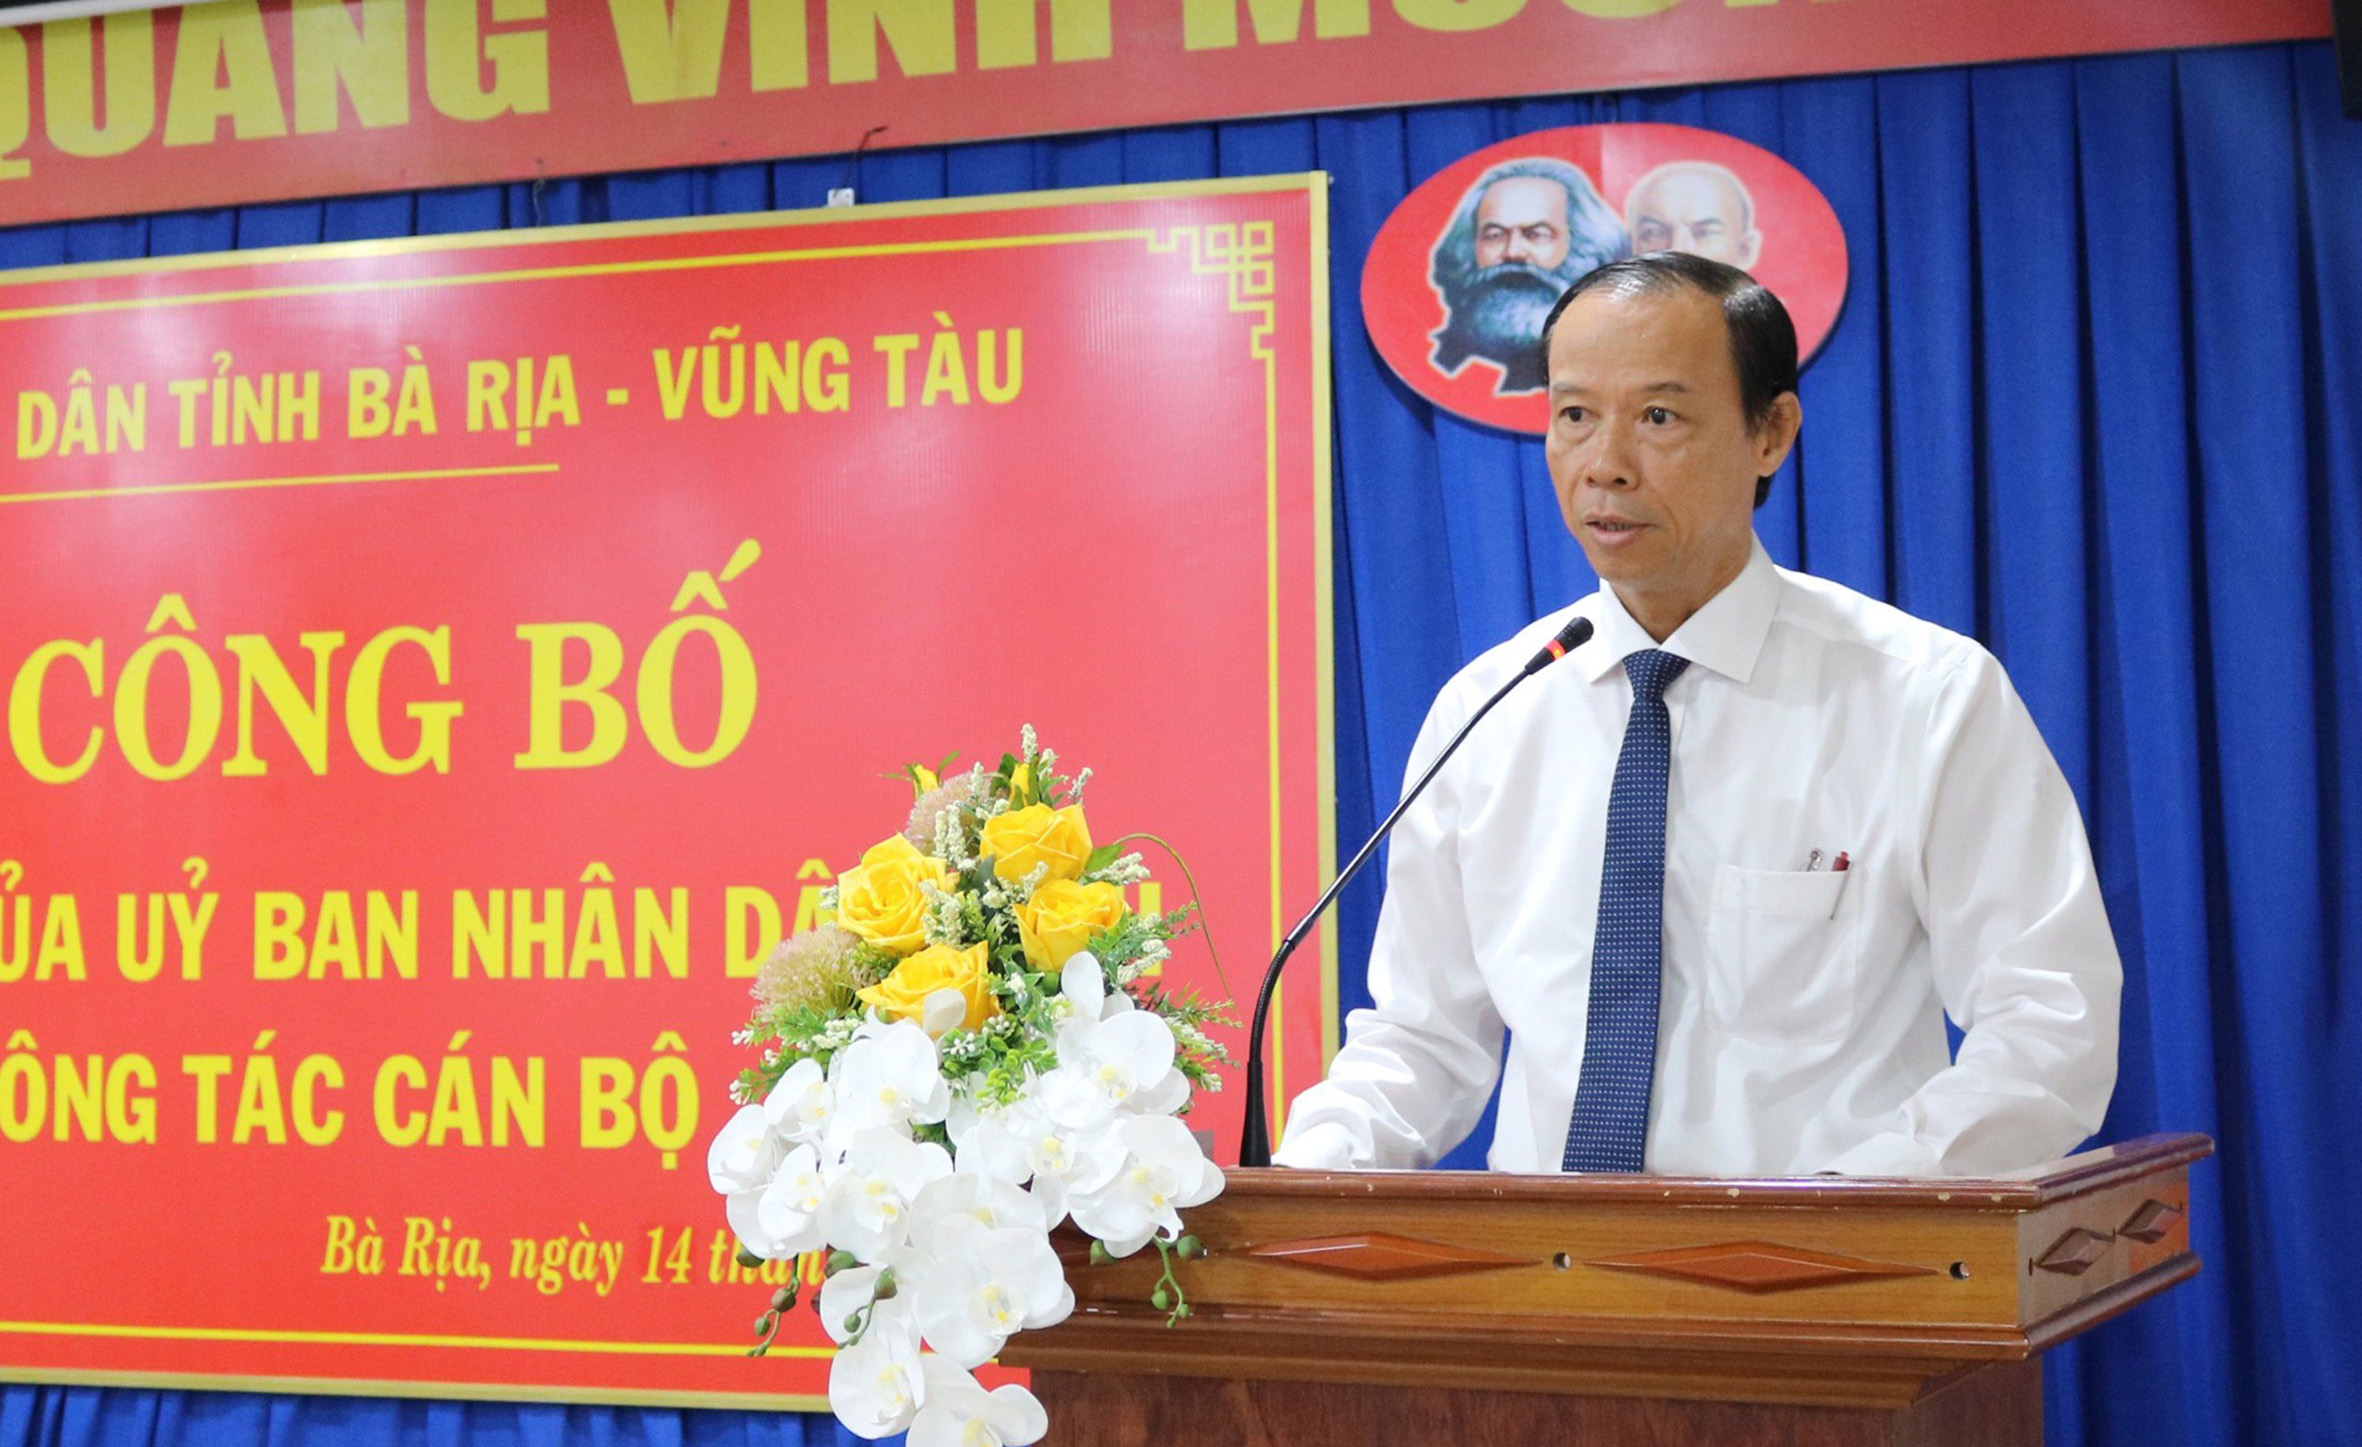 Ông Nguyễn Văn Thọ, Phó Bí thư Tỉnh ủy, Chủ tịch UBND tỉnh, phát biểu tại buổi lễ.